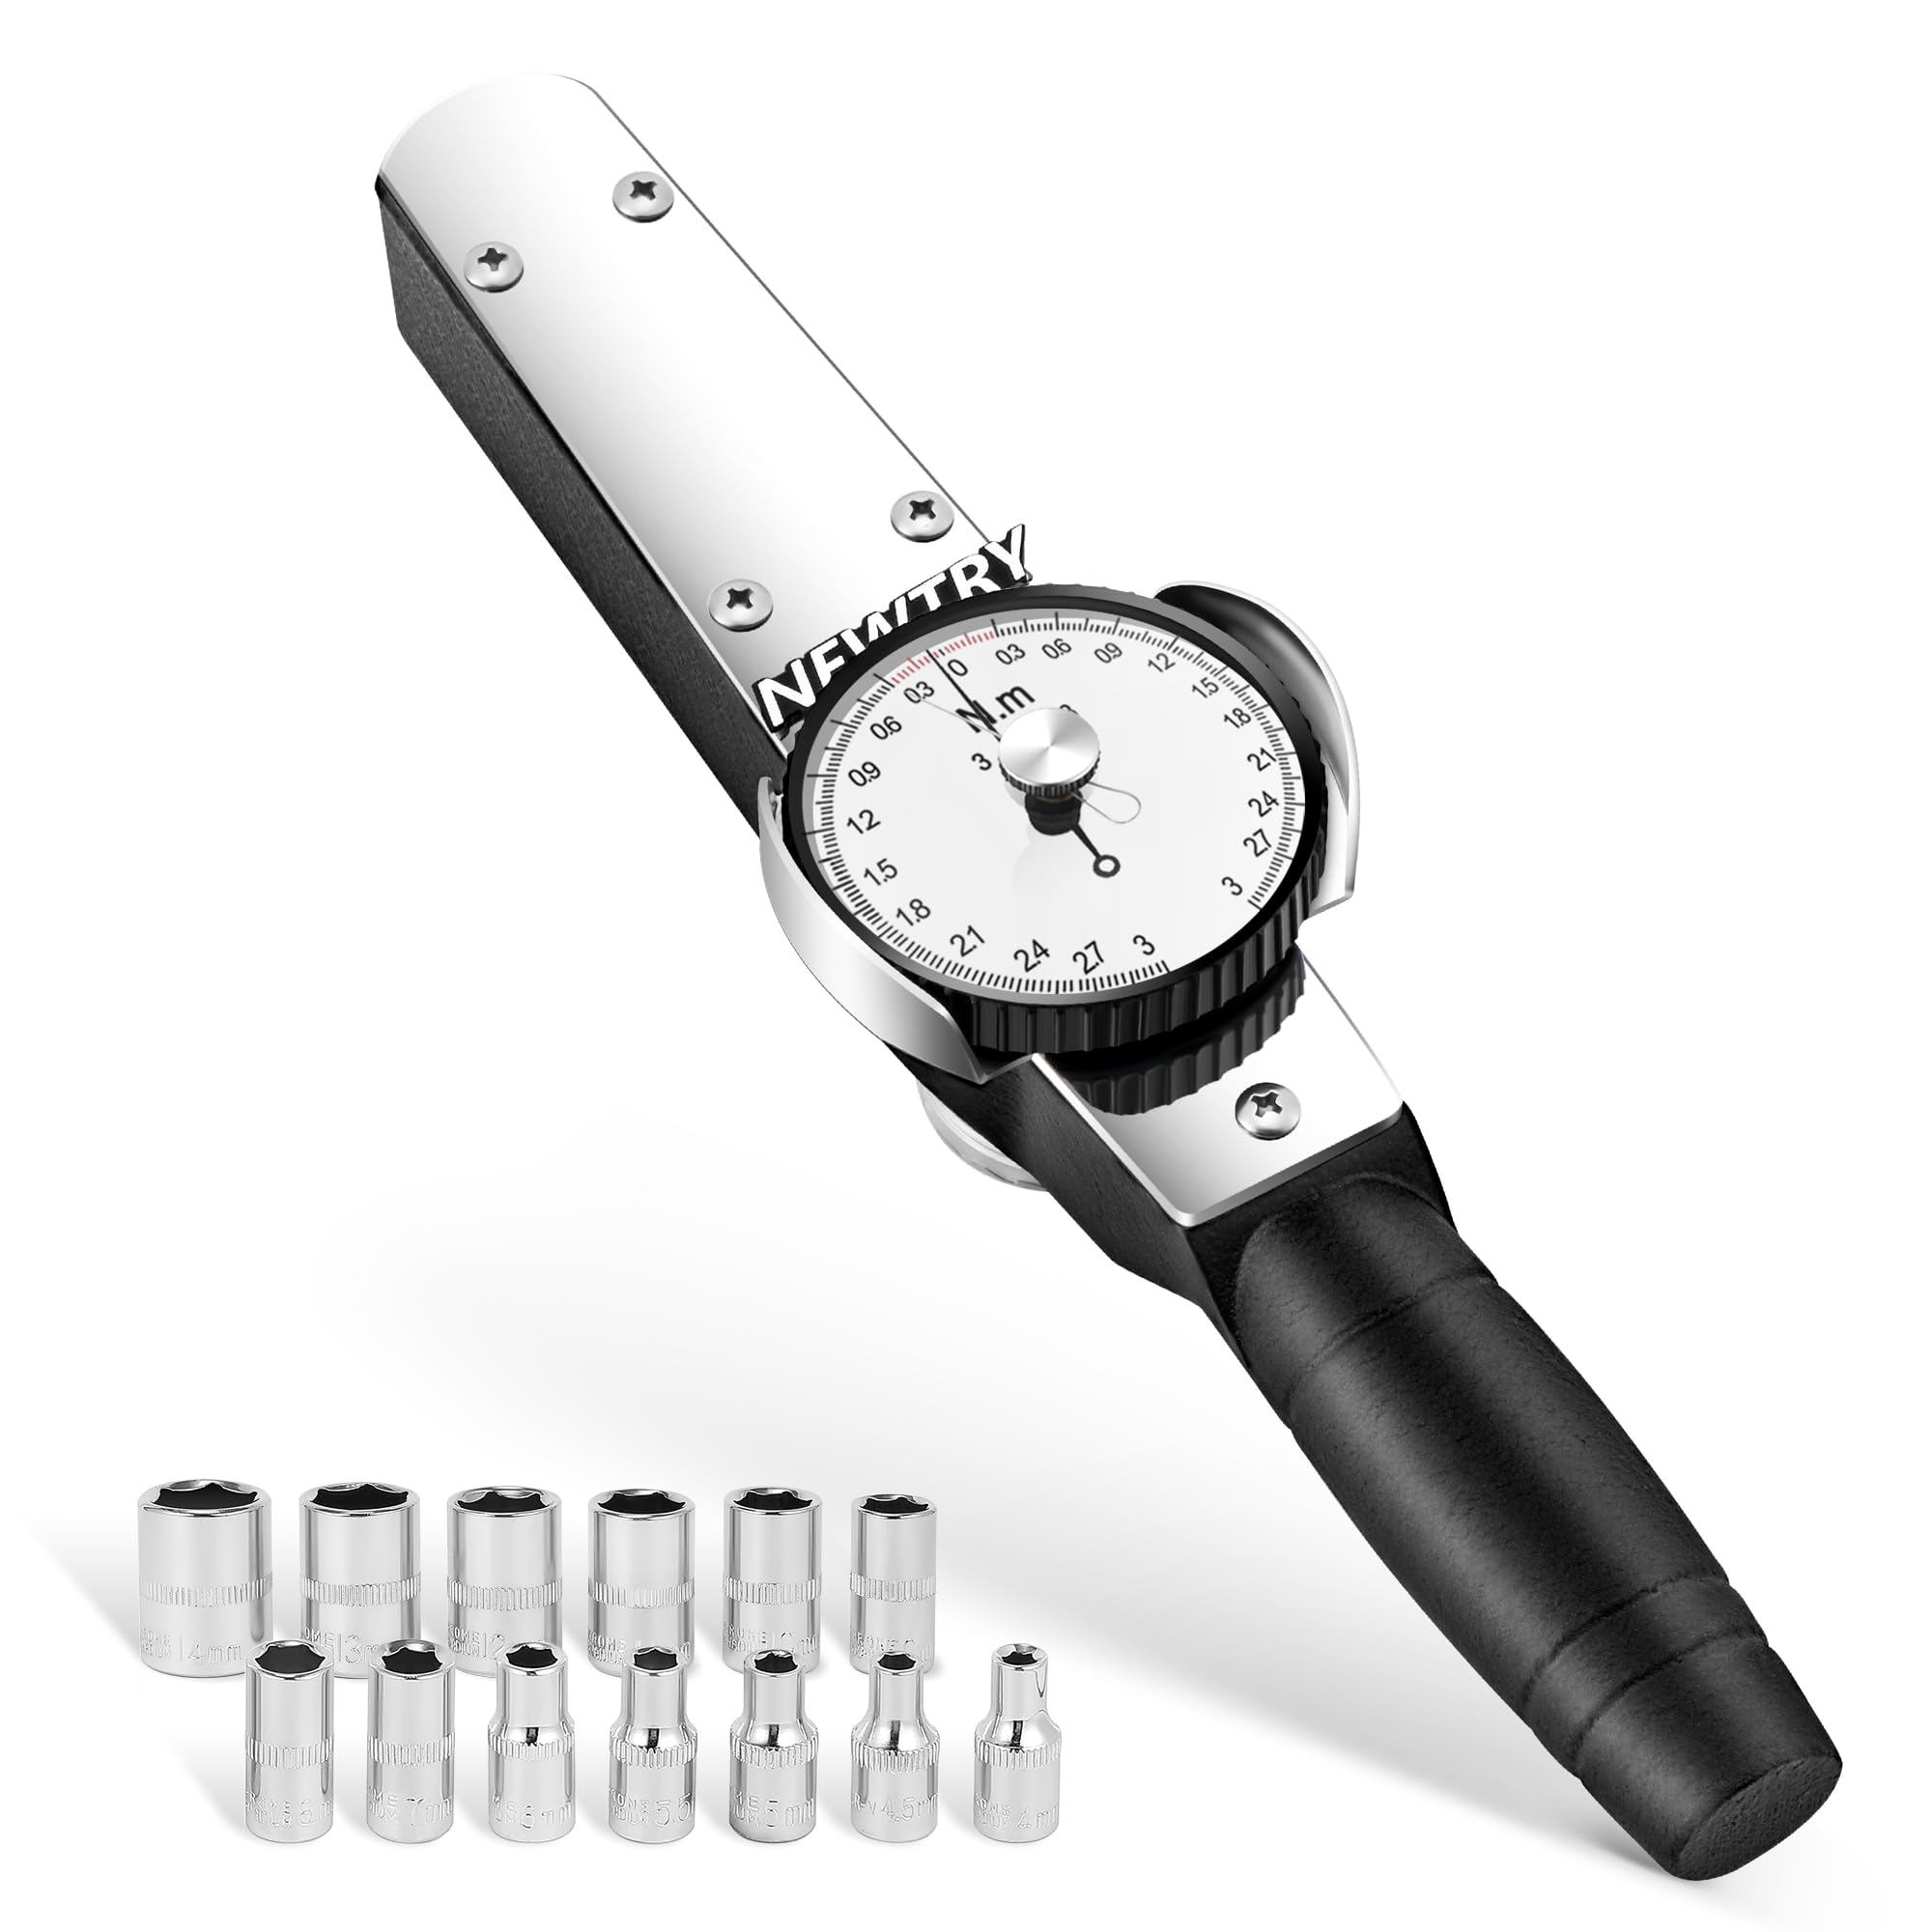 NEWTRY Drehmomentschlüssel Dynamometer Drehmomentmesser Digitaler Zeiger Kraftmessgerät (0.3-3Nm)